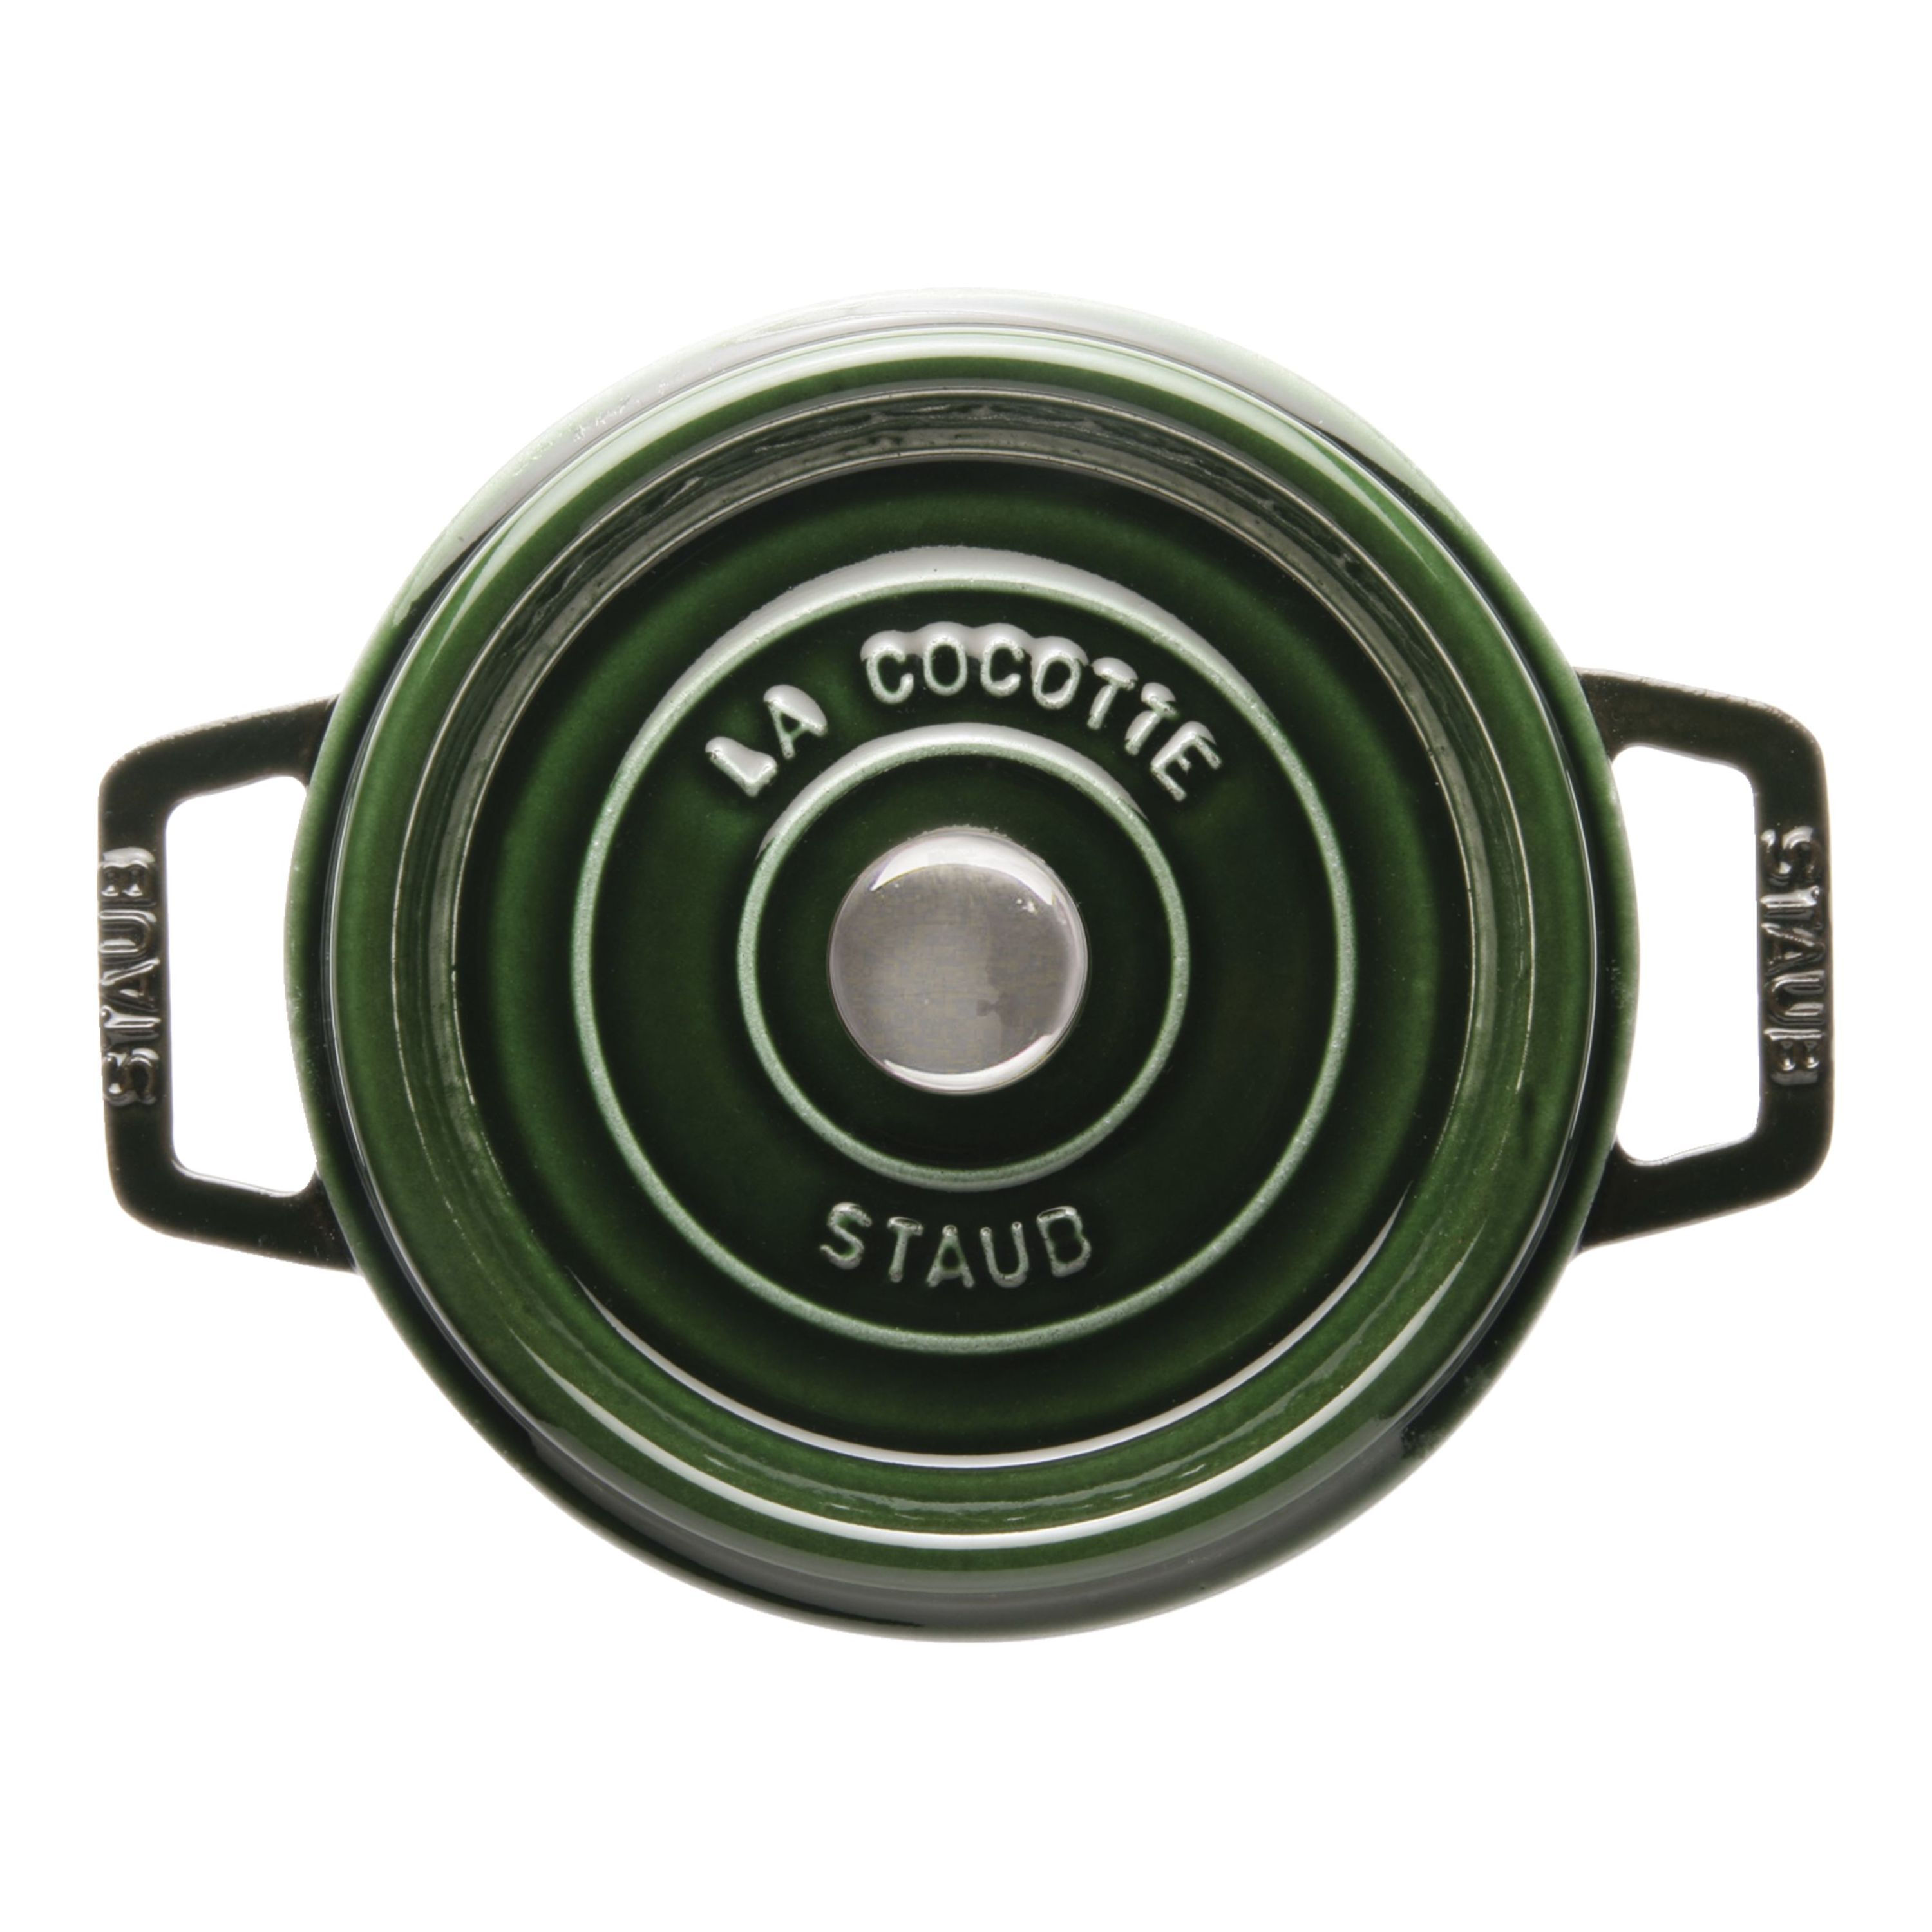 ココット バジルグリーン| 鋳物ホーロー鍋| ストウブ(STAUB)公式通販